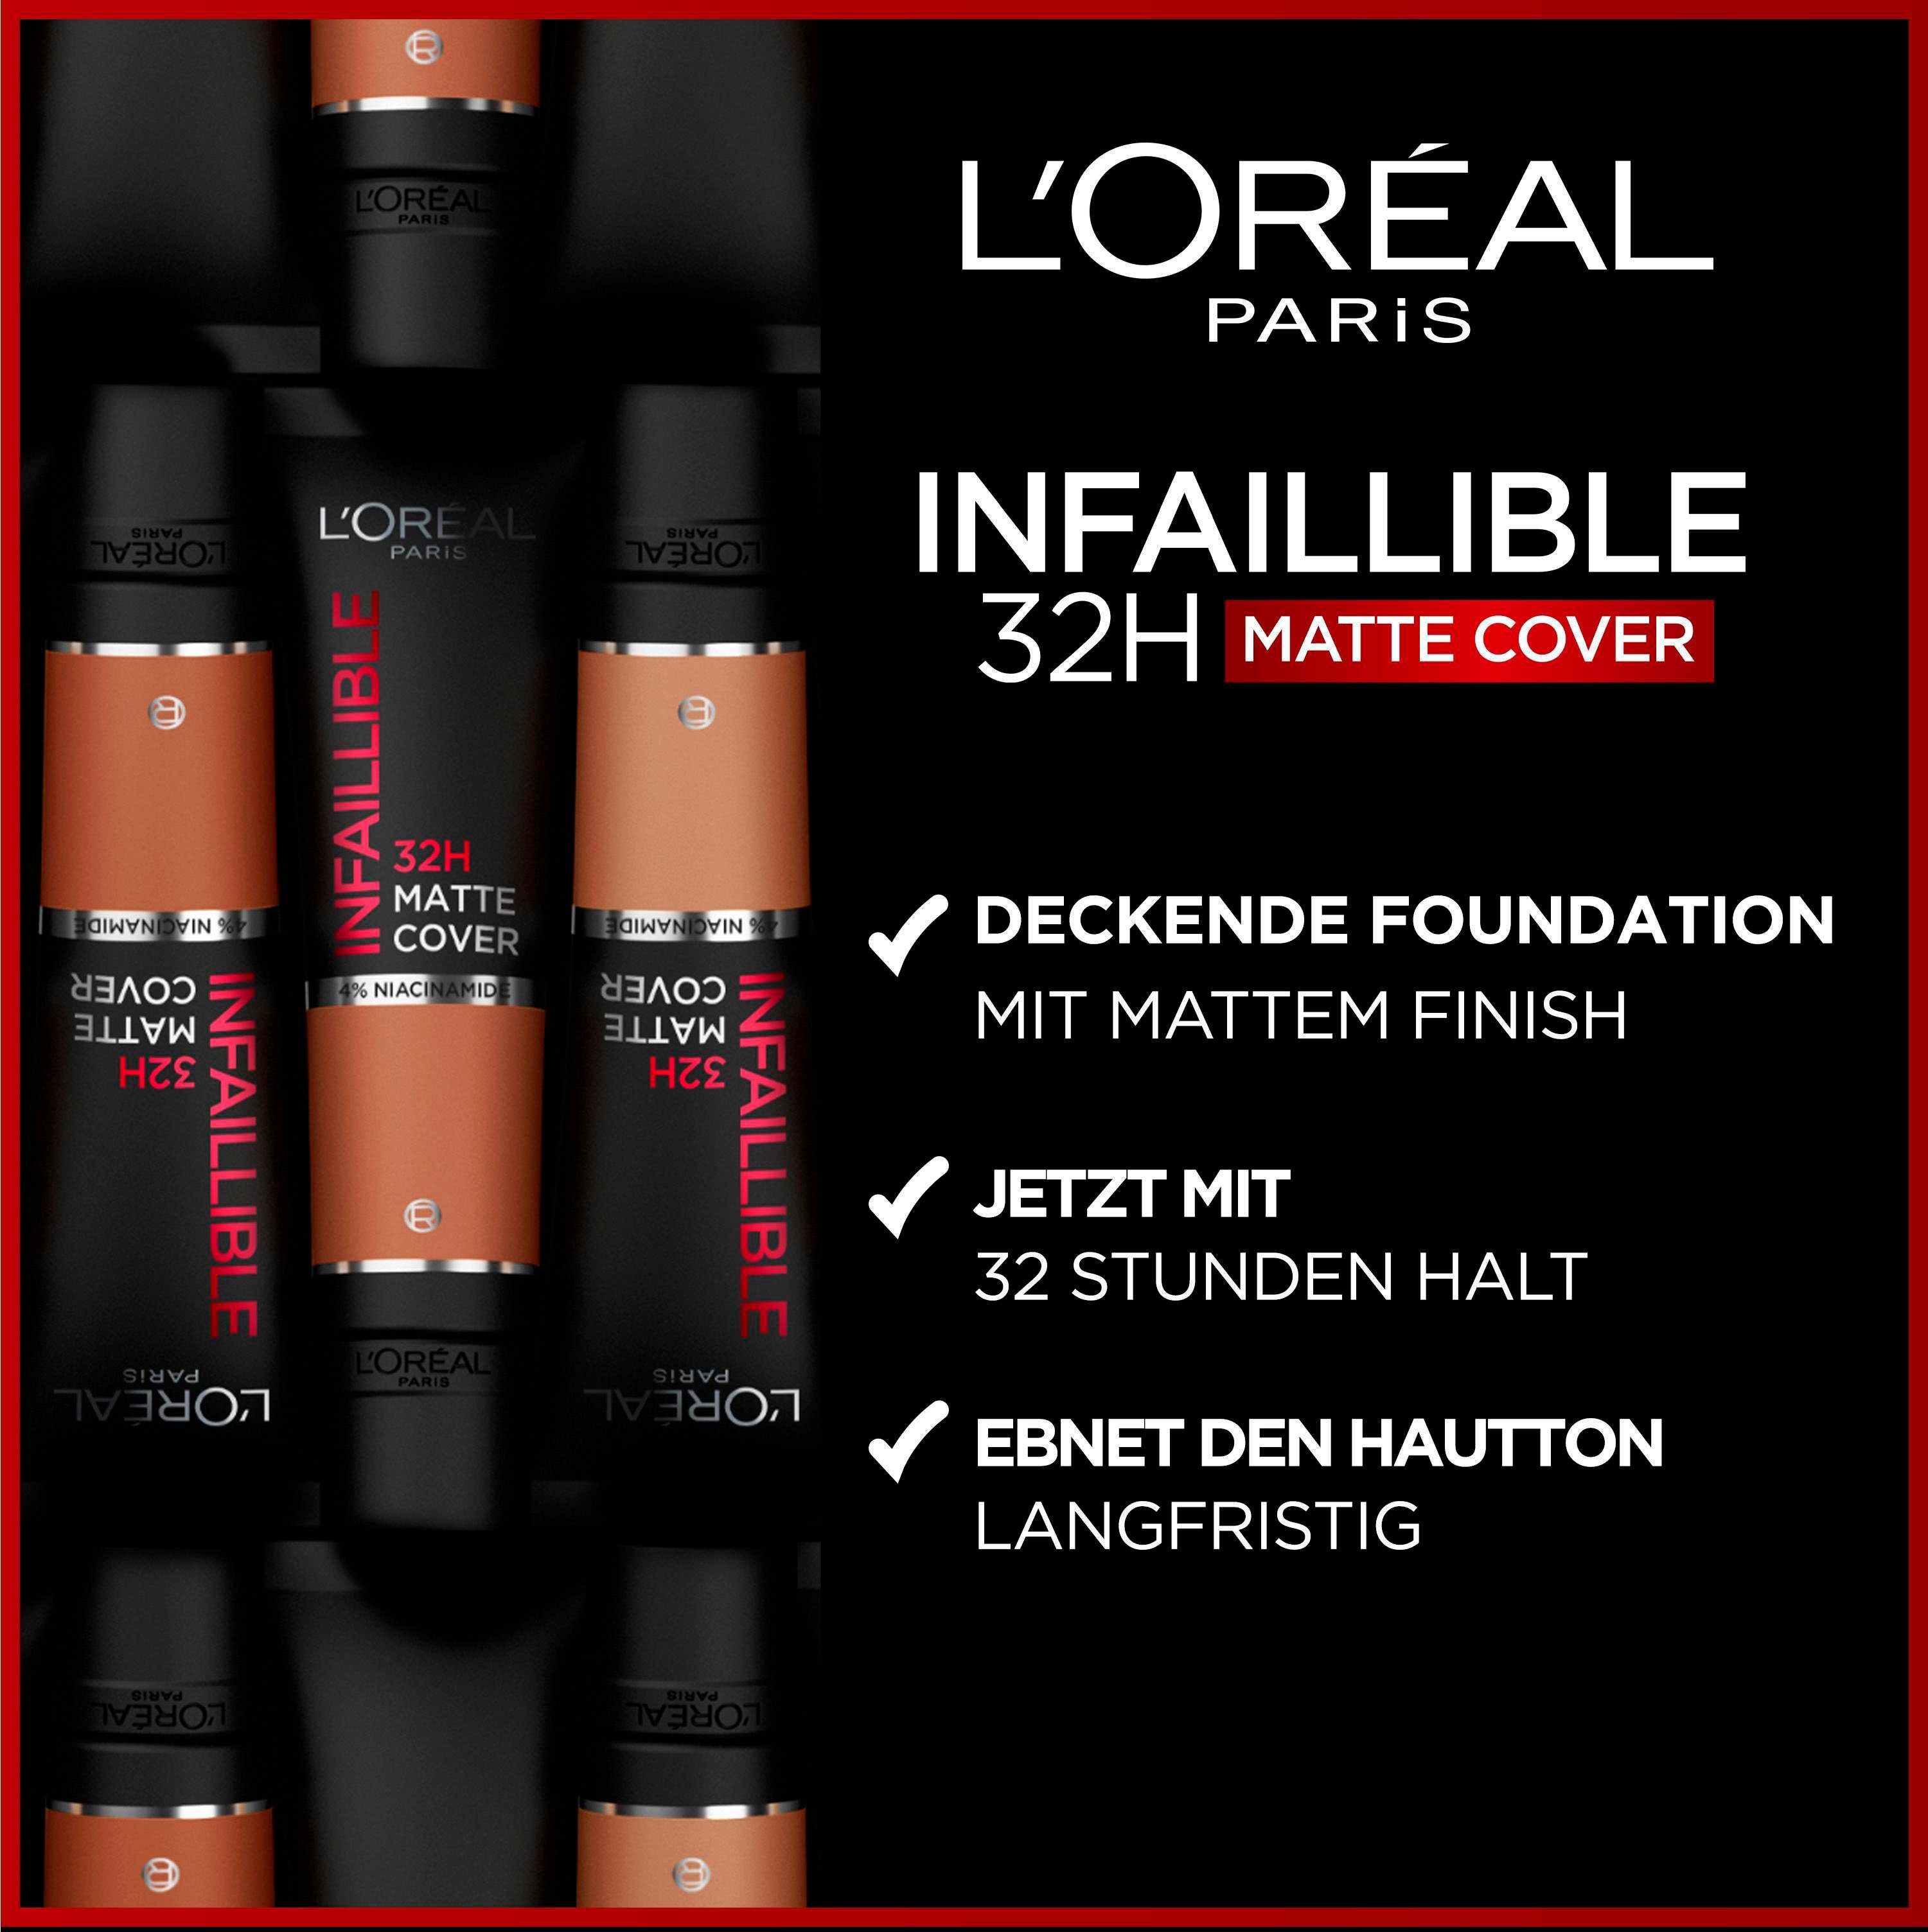 L'Oréal Infaillible cool Paris 175 Foundation PARIS L'ORÉAL undertone Matte 32H Cover